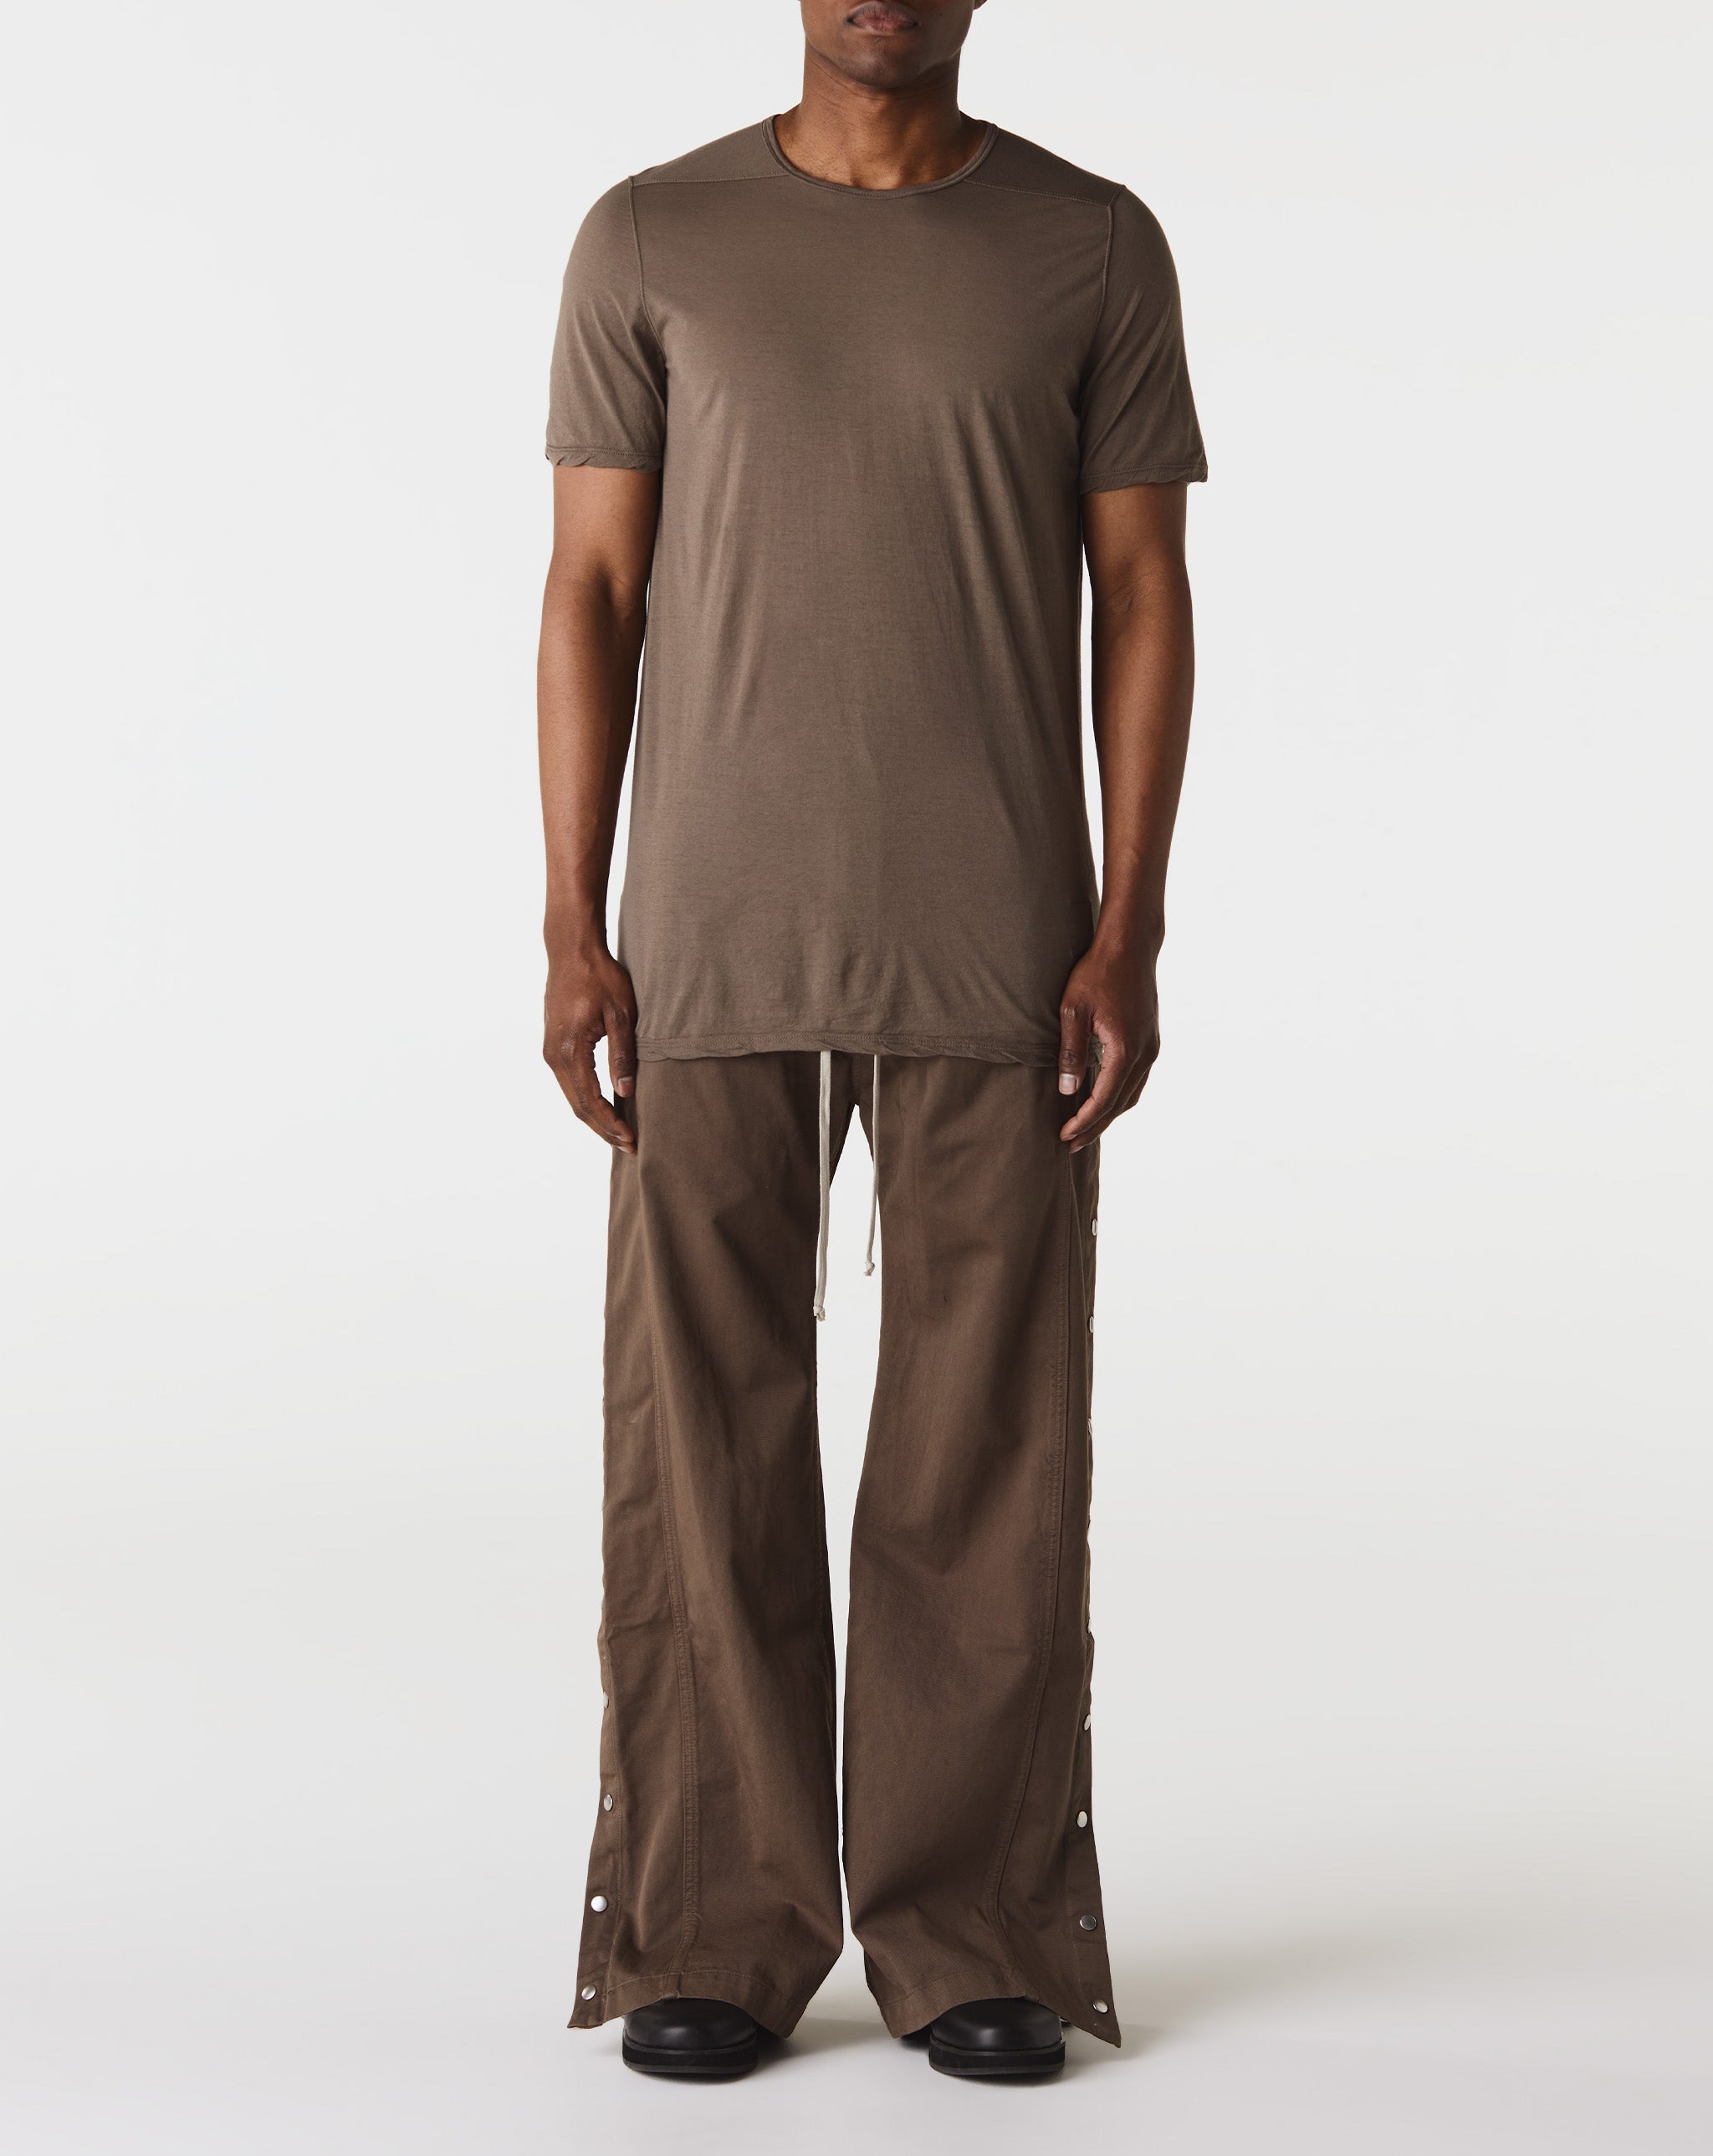 fog applique clothing 3d silicon no vat Level T-Shirt  - Cheap Urlfreeze Jordan outlet